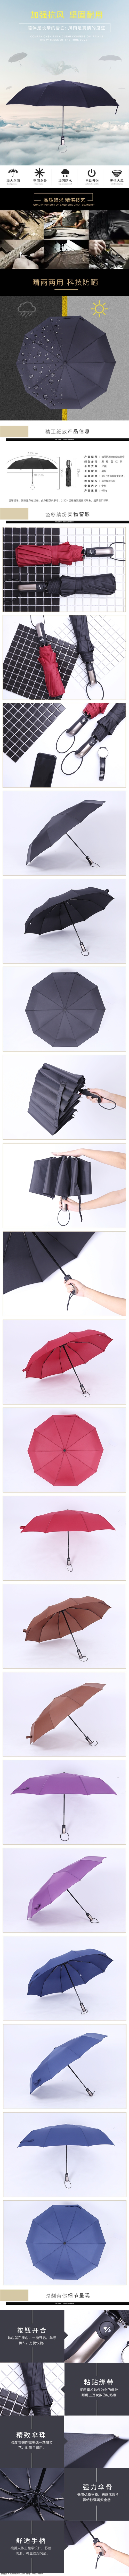 三 折伞 淘宝 天猫 详情 页 简洁 简约 模板 日用品 伞 阿里